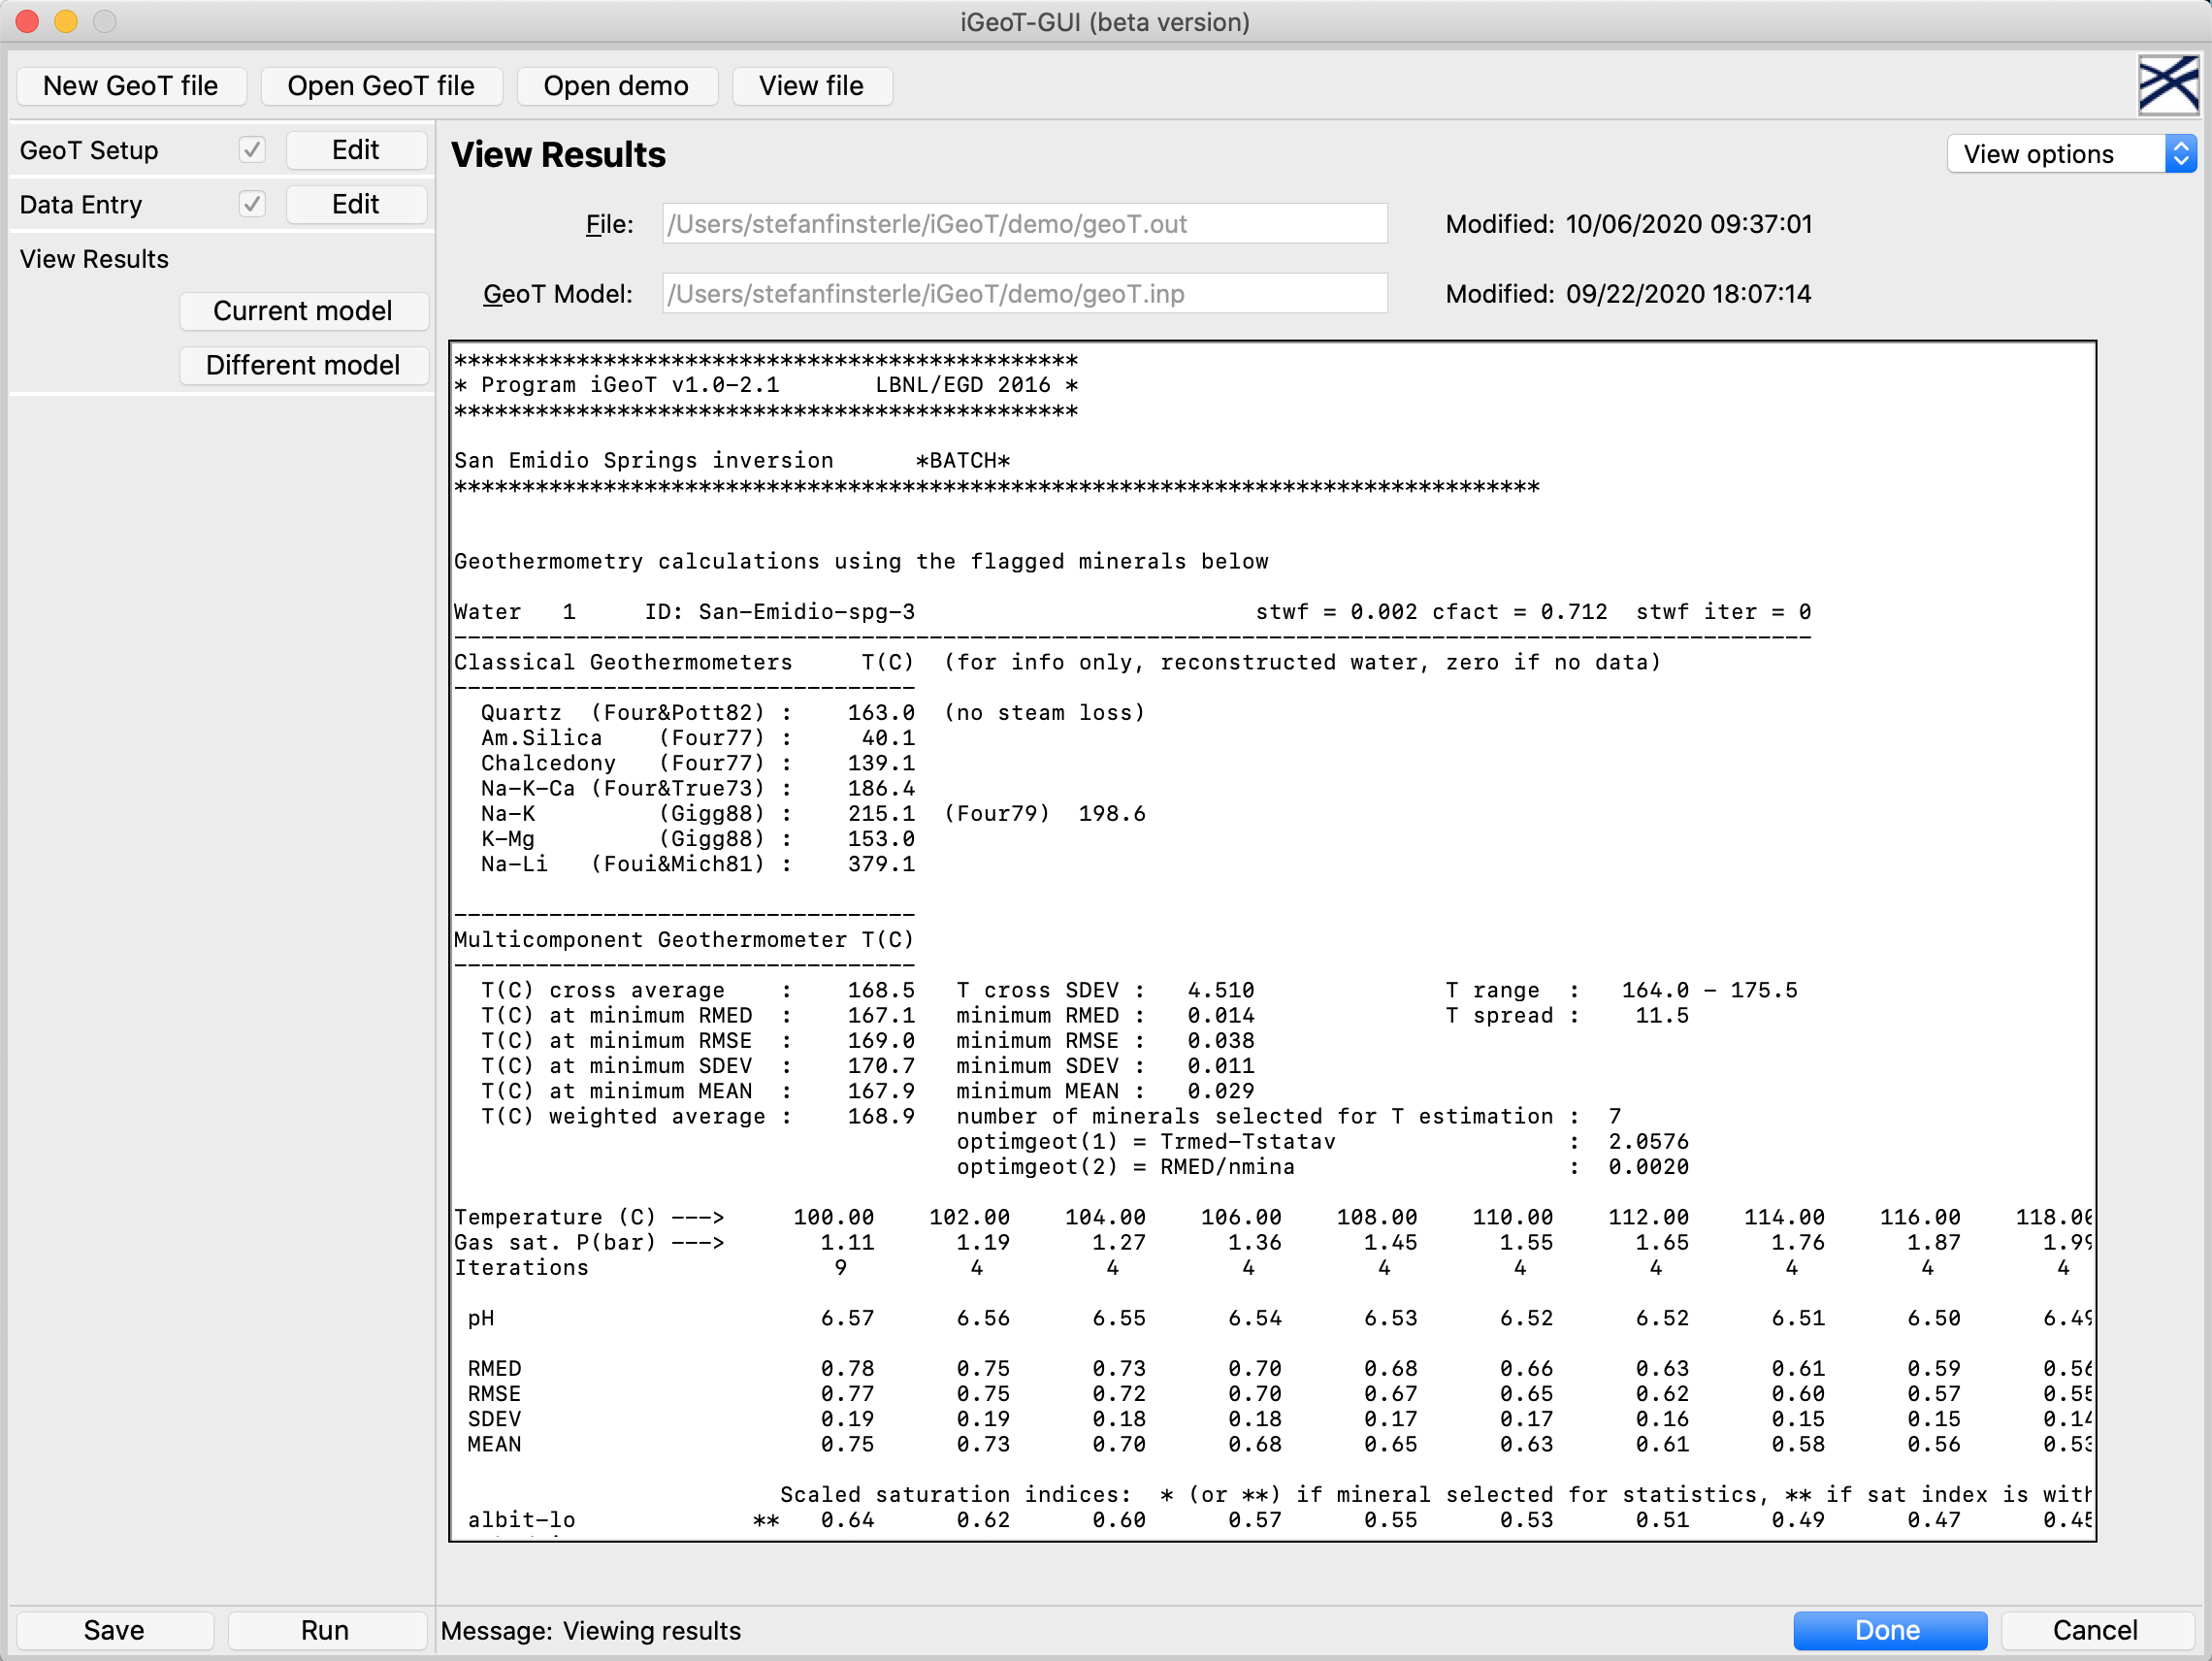 iGeoT-GUI Results Screen: 